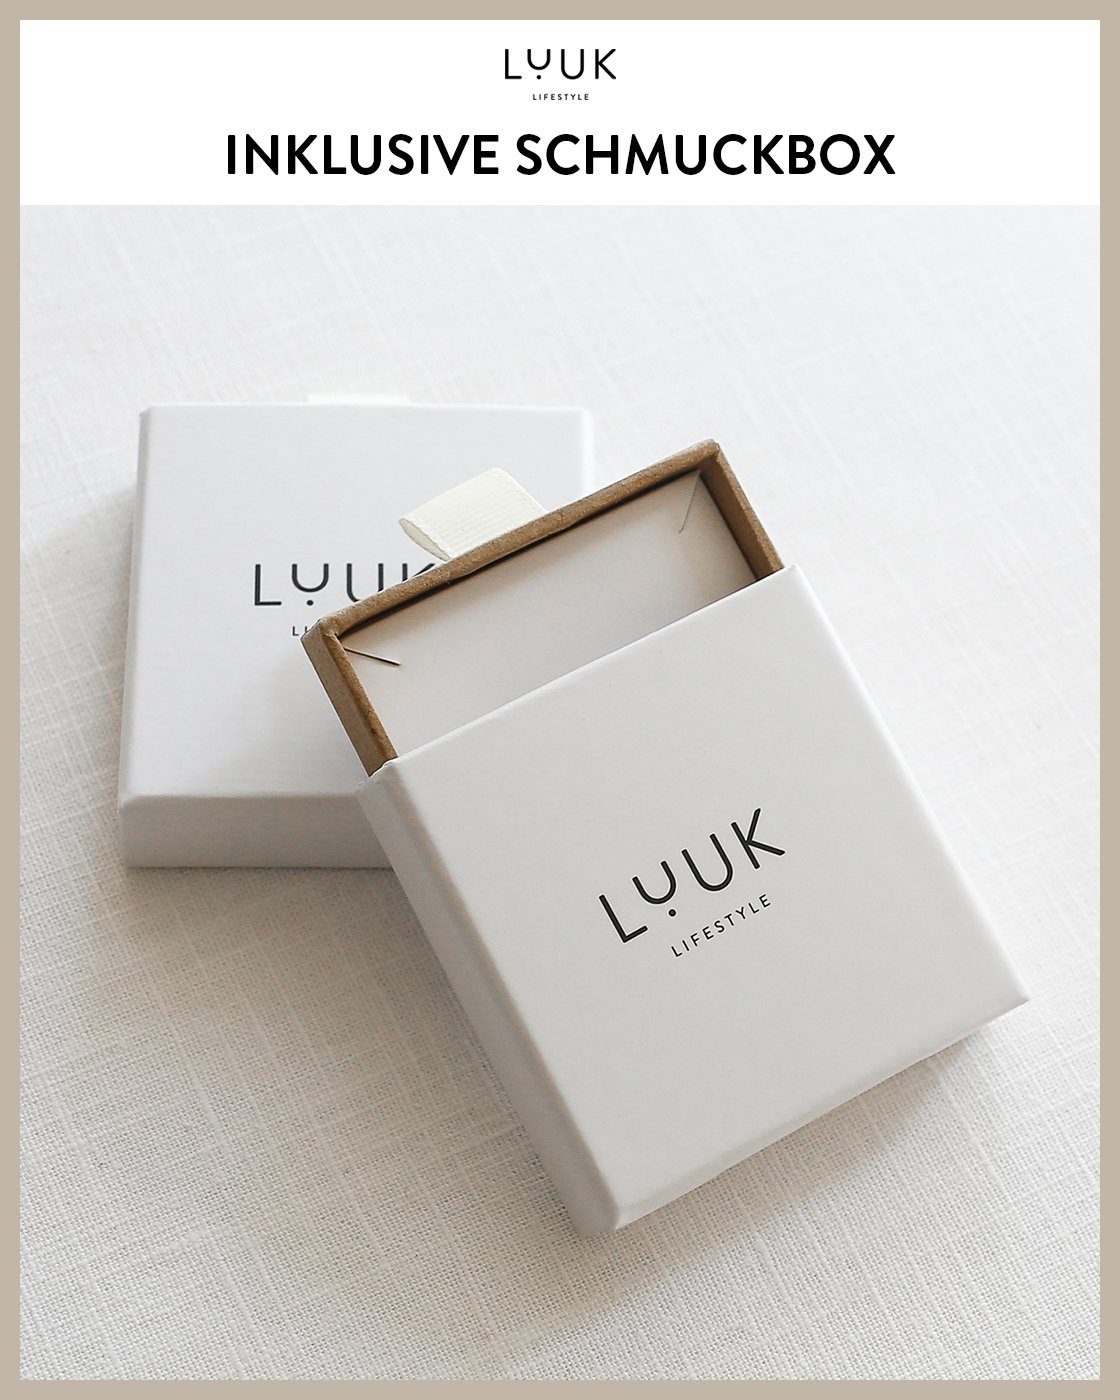 Schmuckbox Kleeblatt, schöner inklusive & alltagstauglich, Rosé hautverträglich, modernes Ohrstecker Design, Paar LIFESTYLE LUUK wasserfest